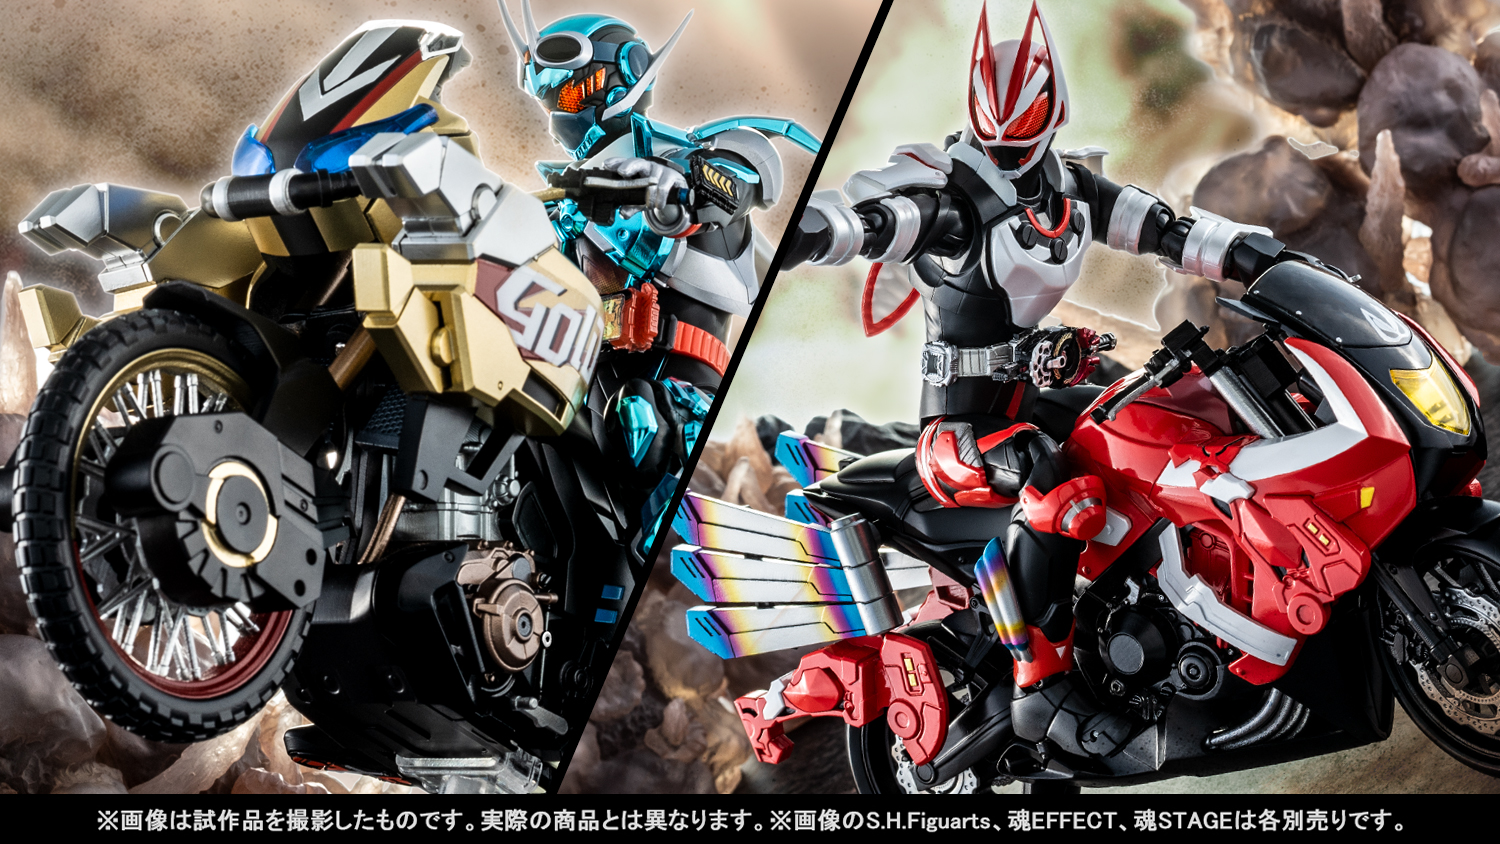 ¡Intensos planos de las máquinas de las dos últimas películas de la serie Kamen Rider! Tamashii web shop Por encargo S.H.Figuarts" GOLDDASH" y "BOOSTRIKER" Introducción de las nuevas tomas.